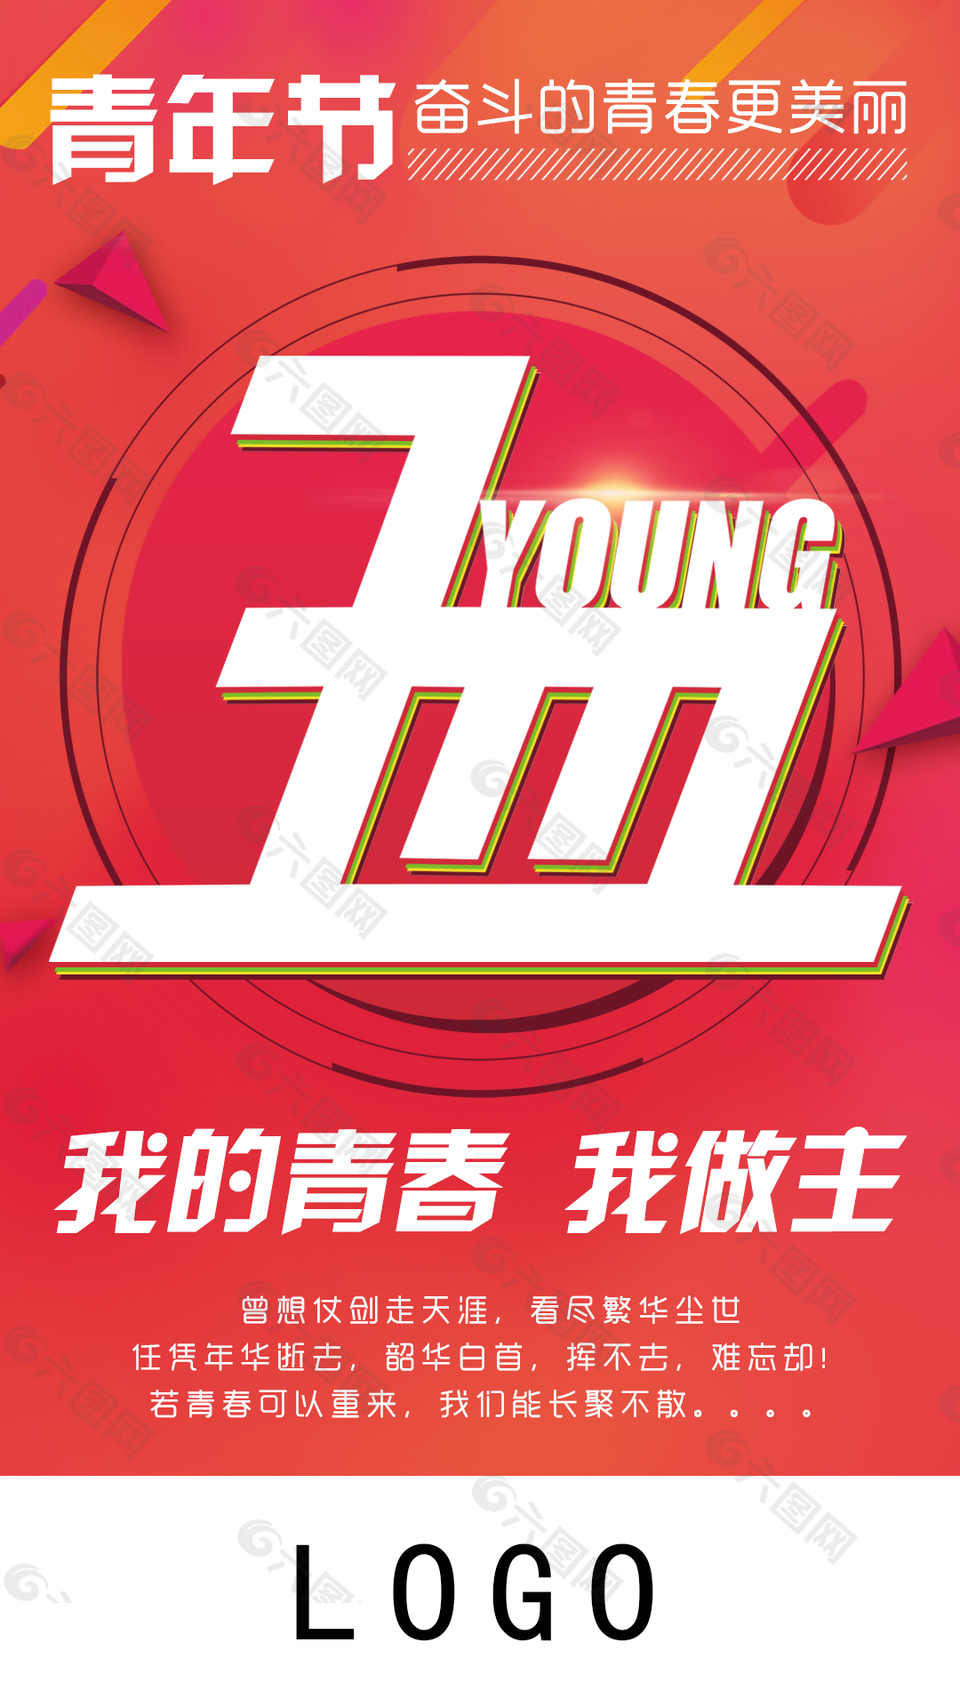 5.4青年节节日海报